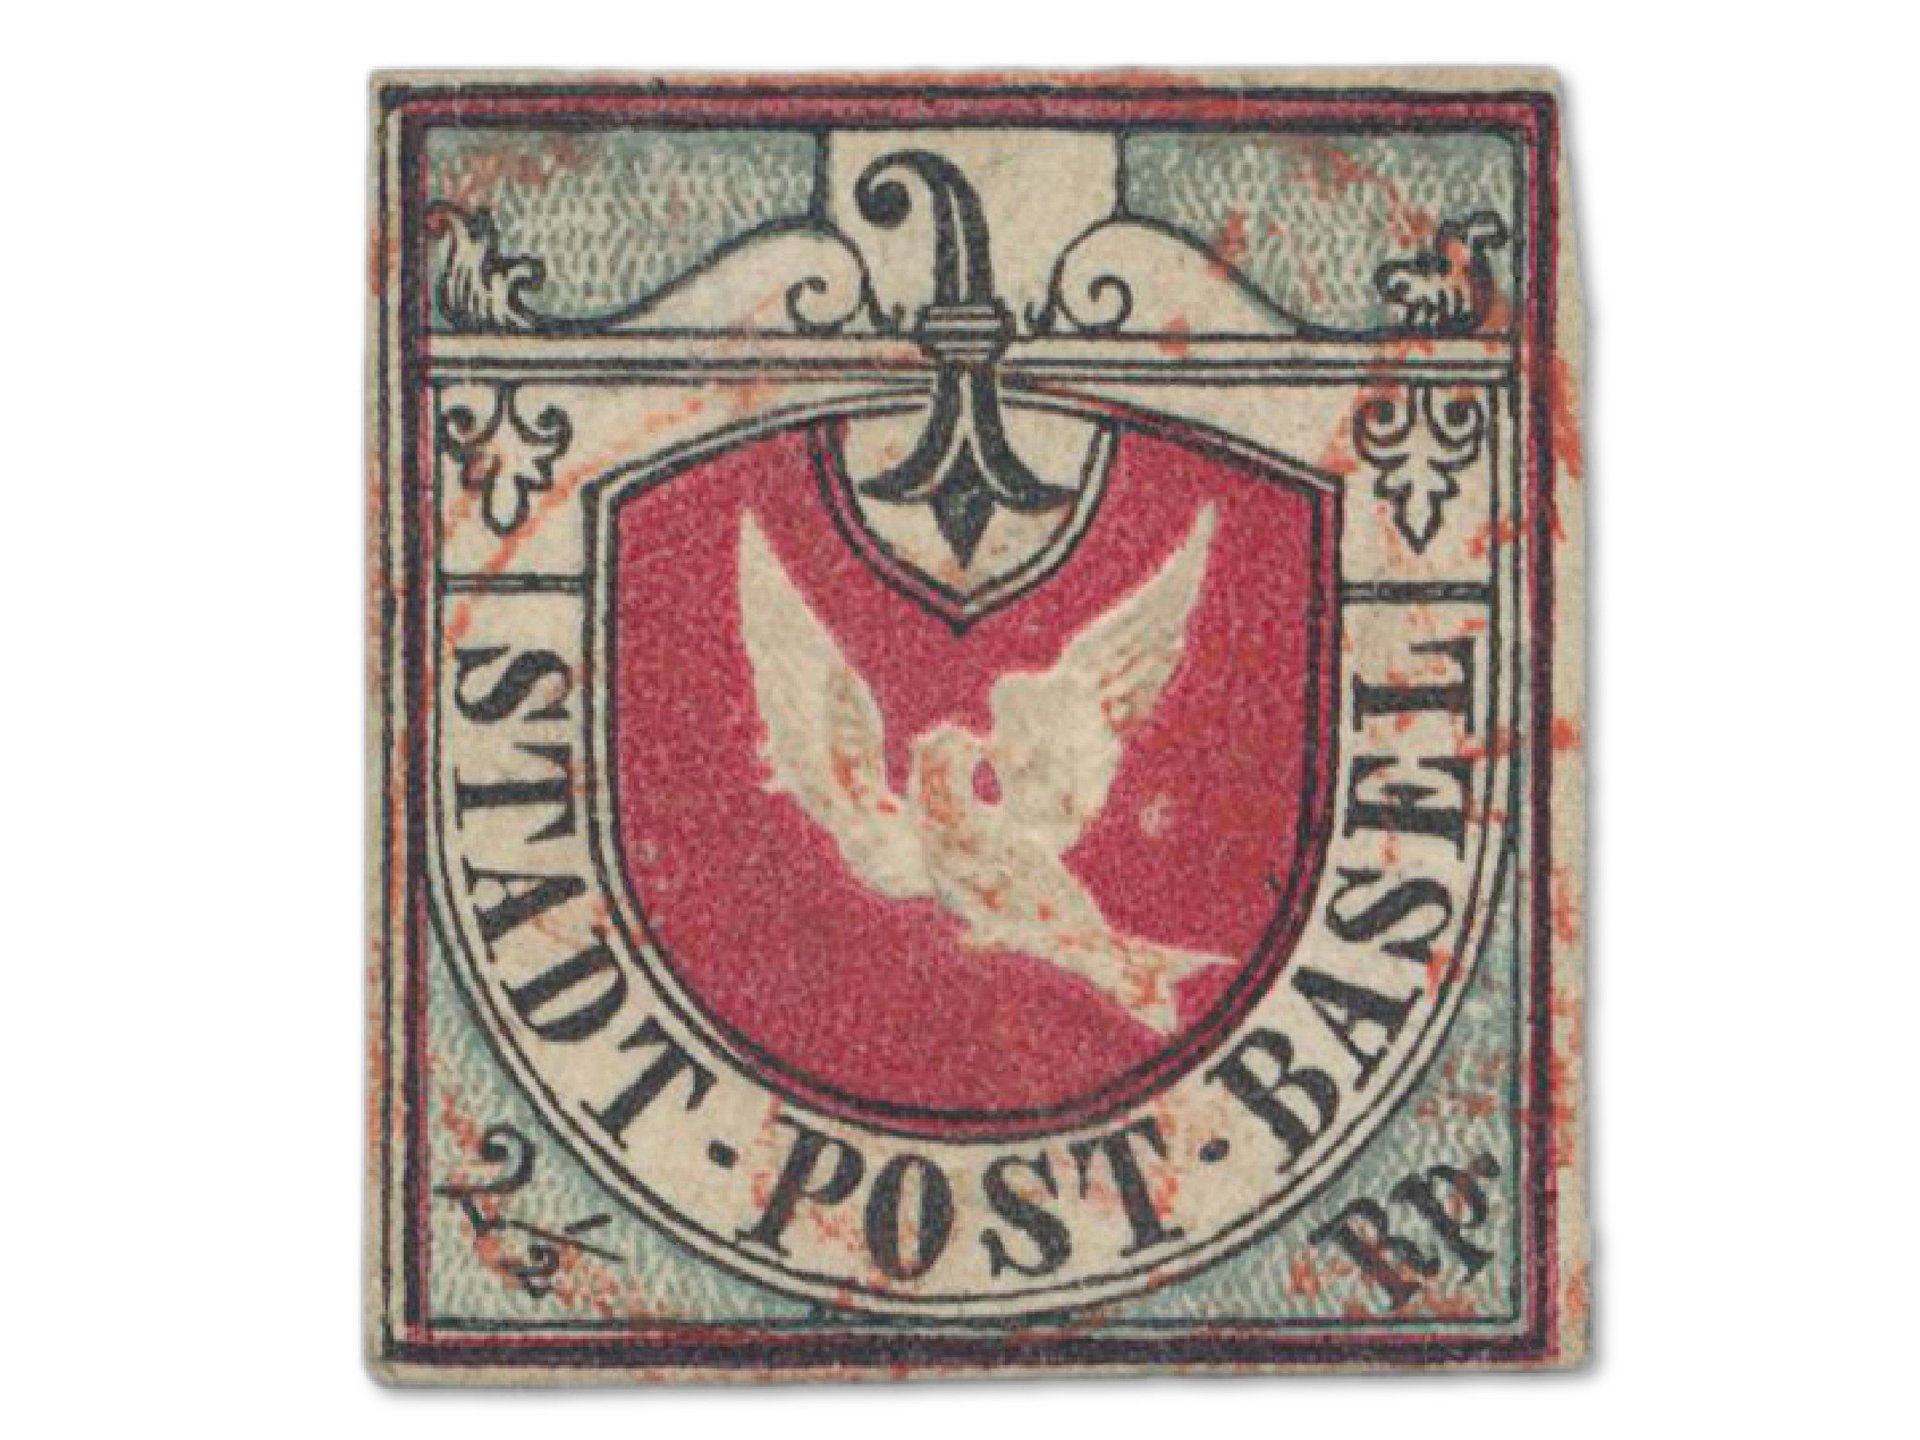 Briefmarke "Baseler Taube" von 1845 außerordentlich farbfrisch und ringsum weißrandig geschnitten